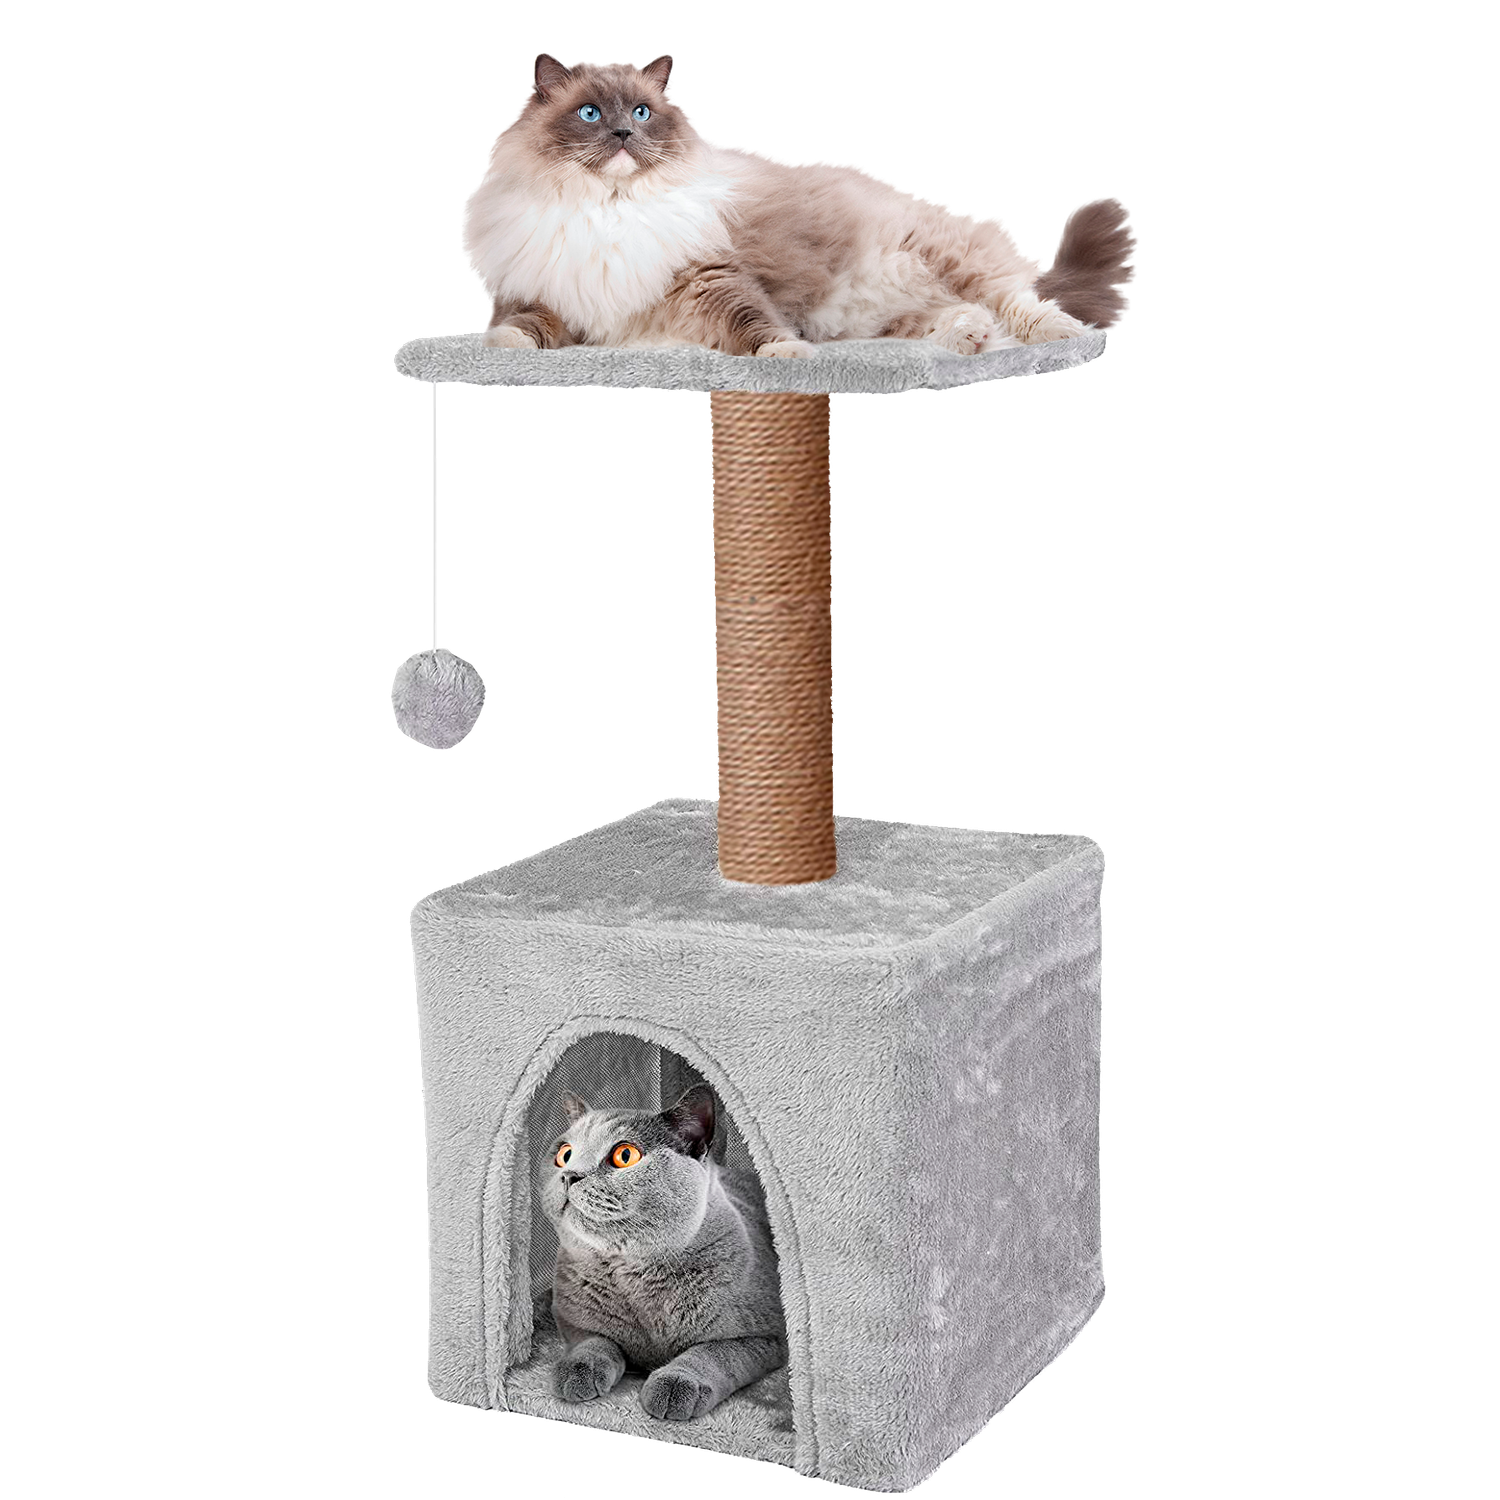 Домик для кошки с когтеточкой Pet БМФ Серый - фото 8